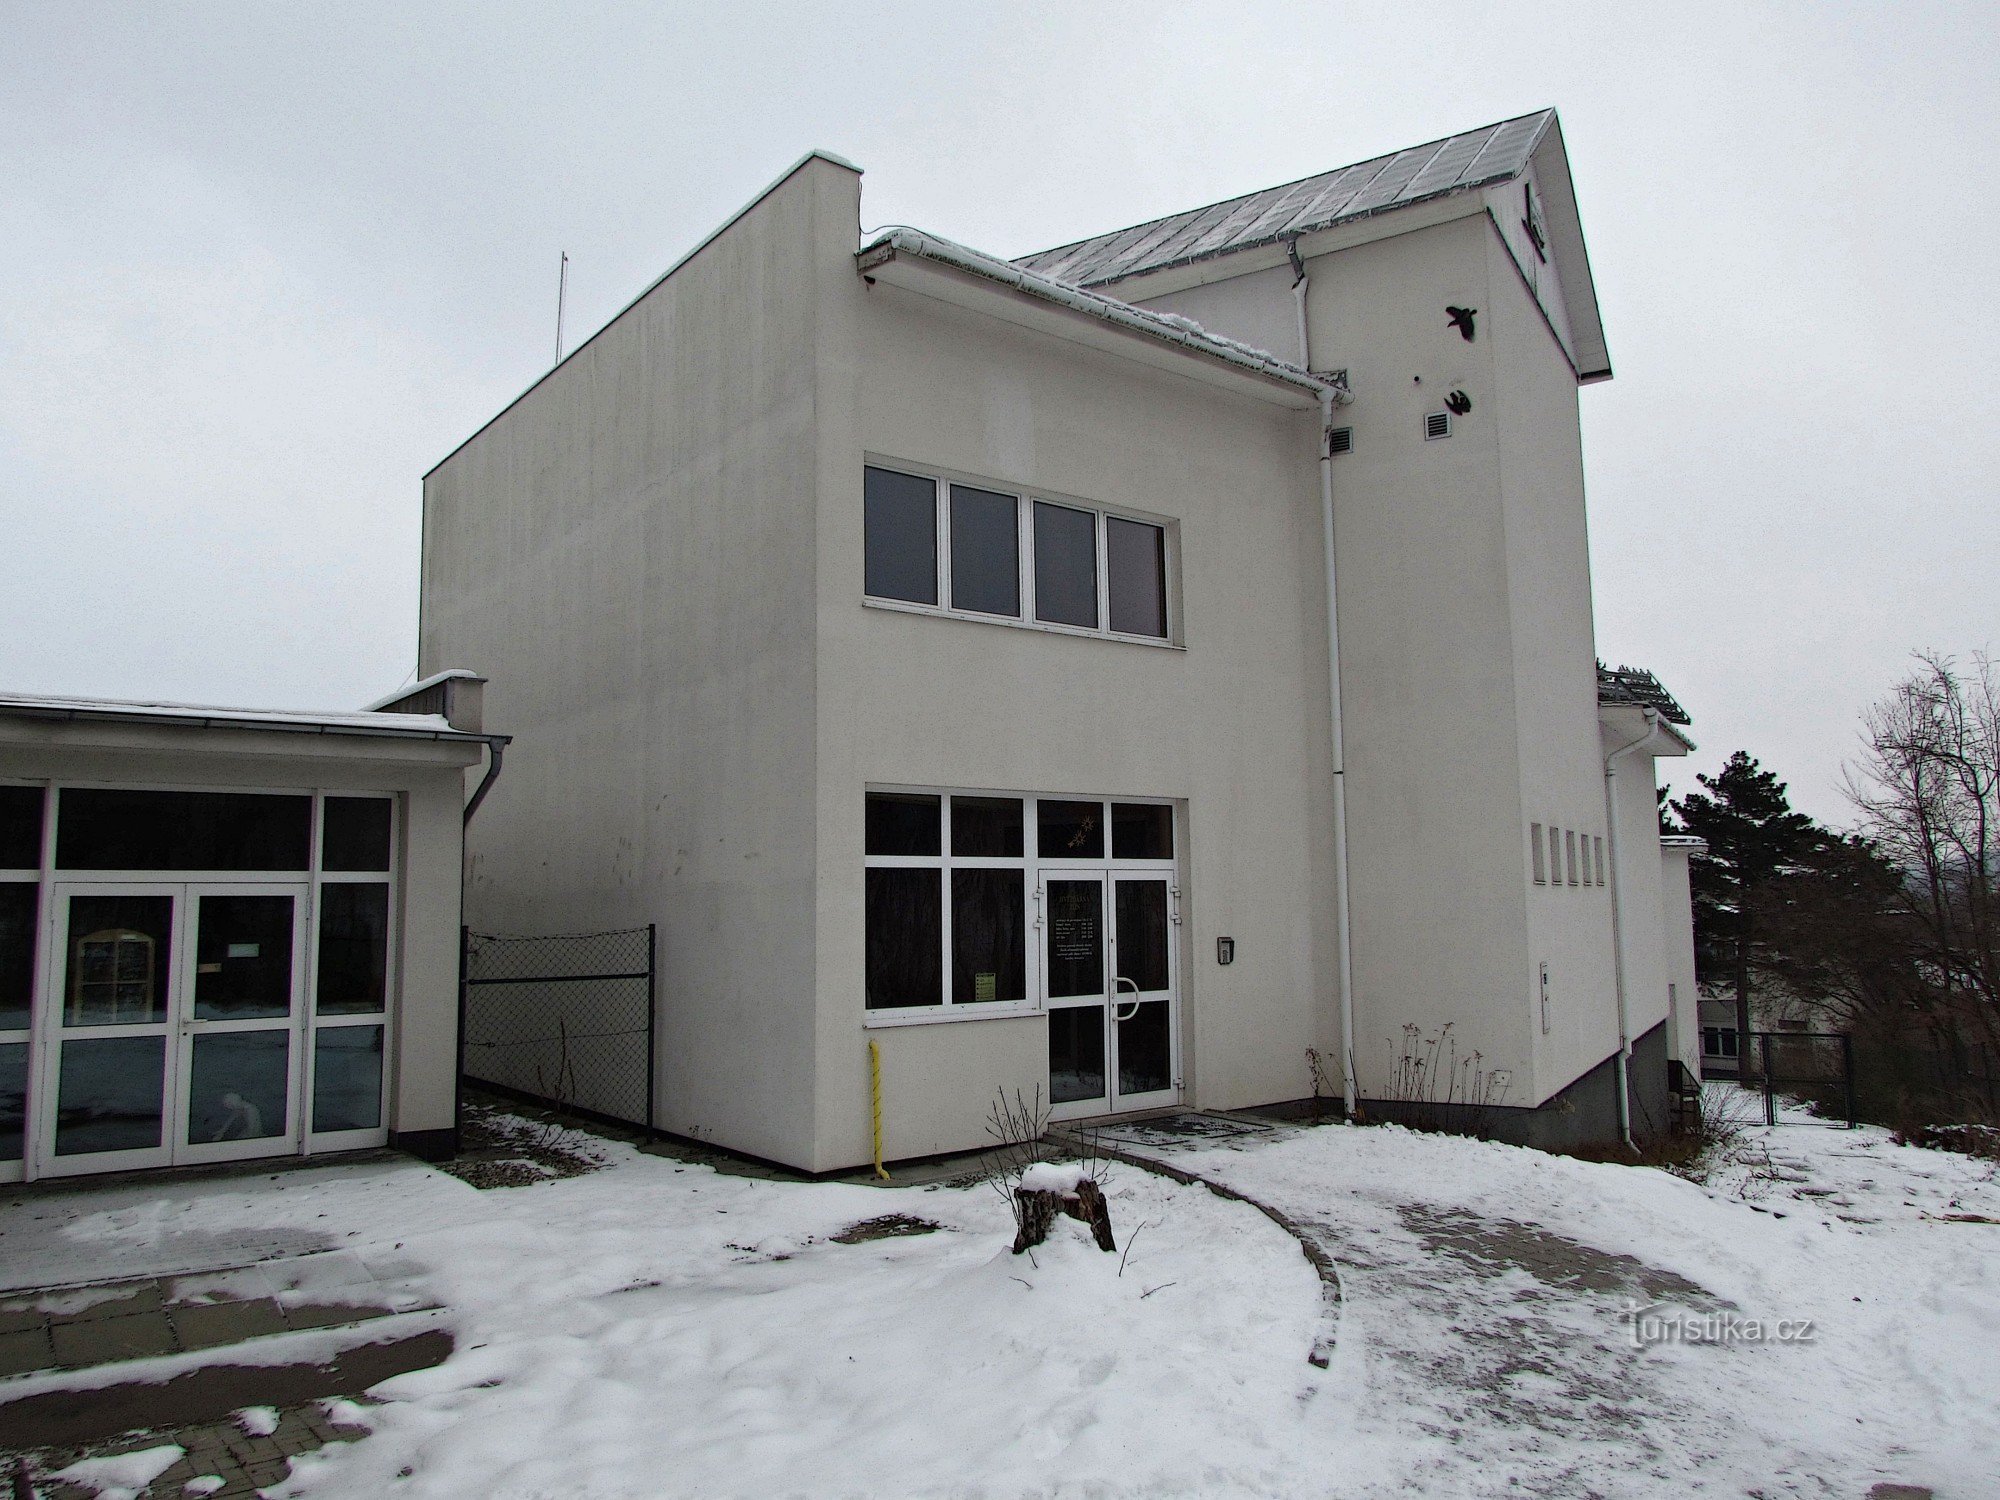 Zlín - observatorio